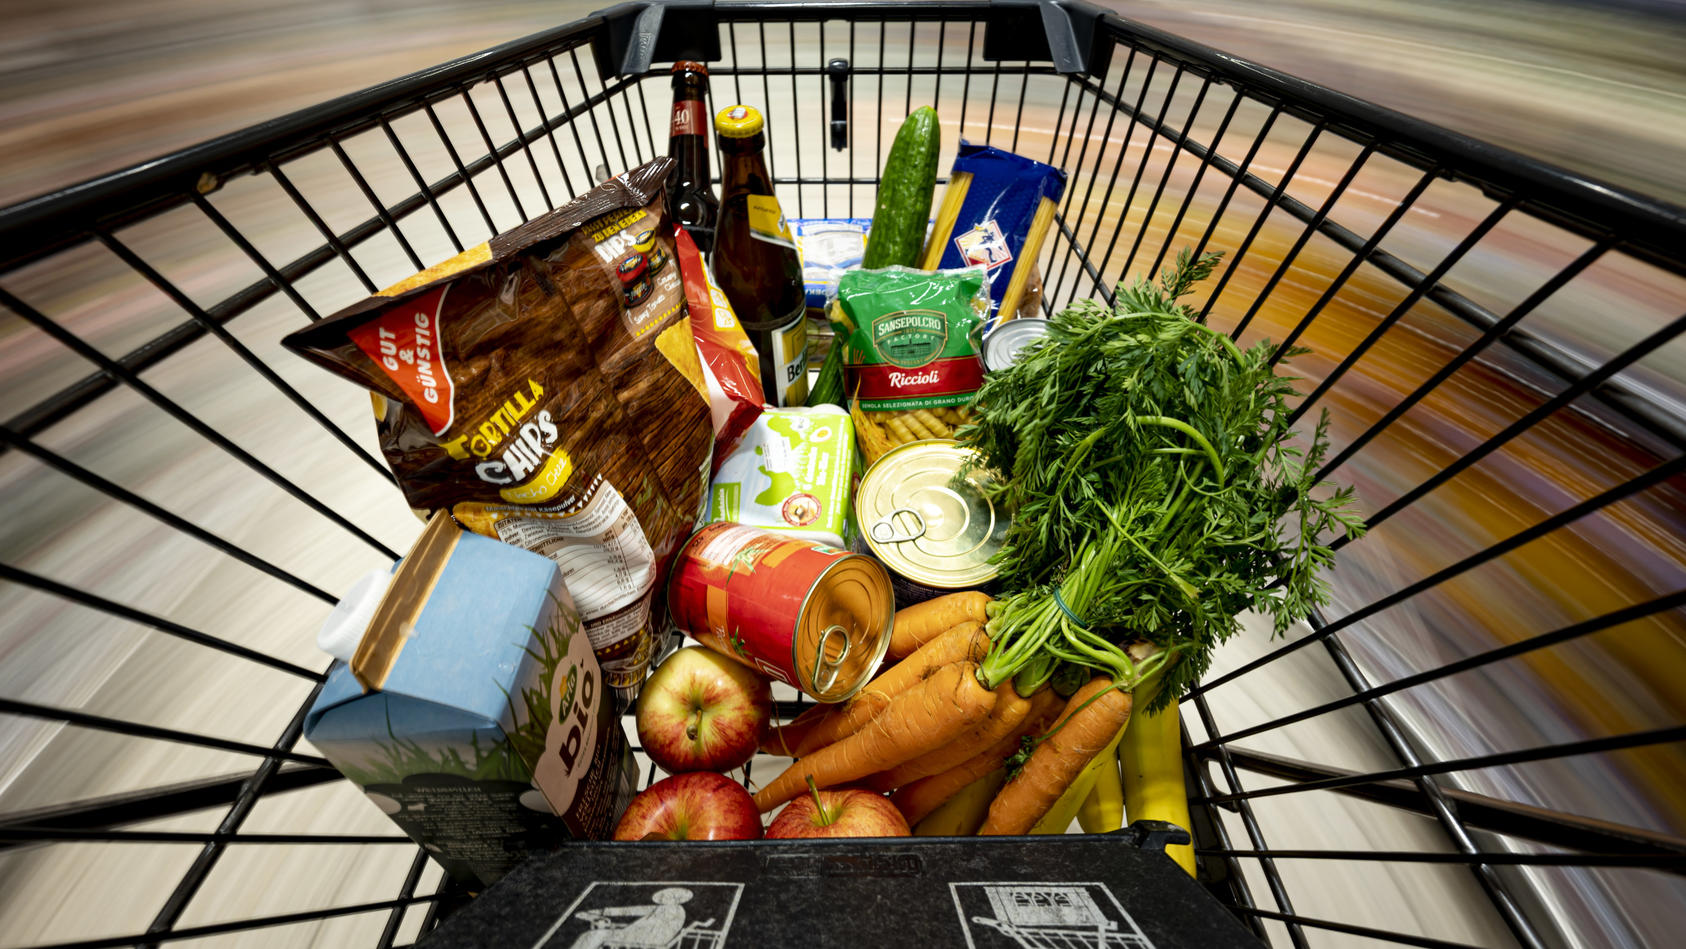 ARCHIV - 14.04.2021, Berlin: Ein Einkauf liegt in einem Einkaufswagen in einem Supermarkt. Die Inflation in Deutschland ist im November 2021 auf den höchsten Stand seit fast 30 Jahren gestiegen. Foto: Fabian Sommer/dpa +++ dpa-Bildfunk +++